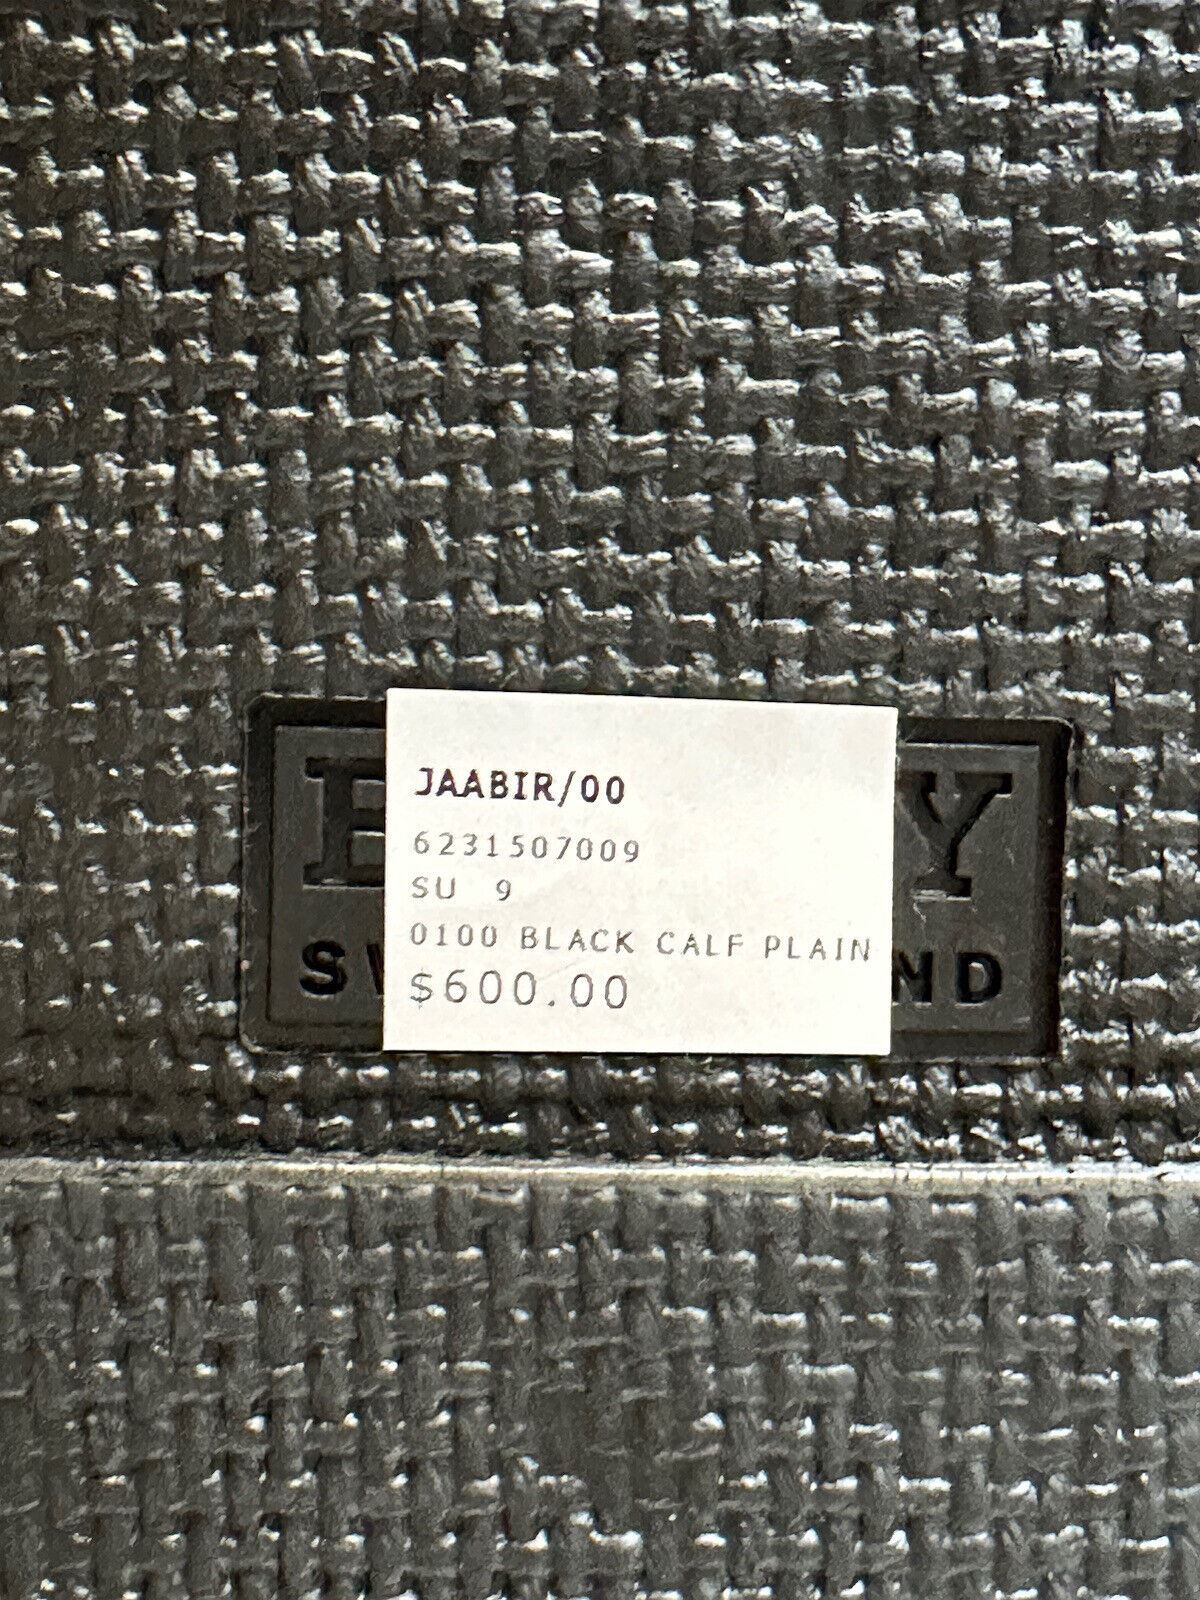 NIB Мужские черные кожаные шлепанцы Bally Jaabir за 560 долларов США 9,5 США (42,5) 6231507 